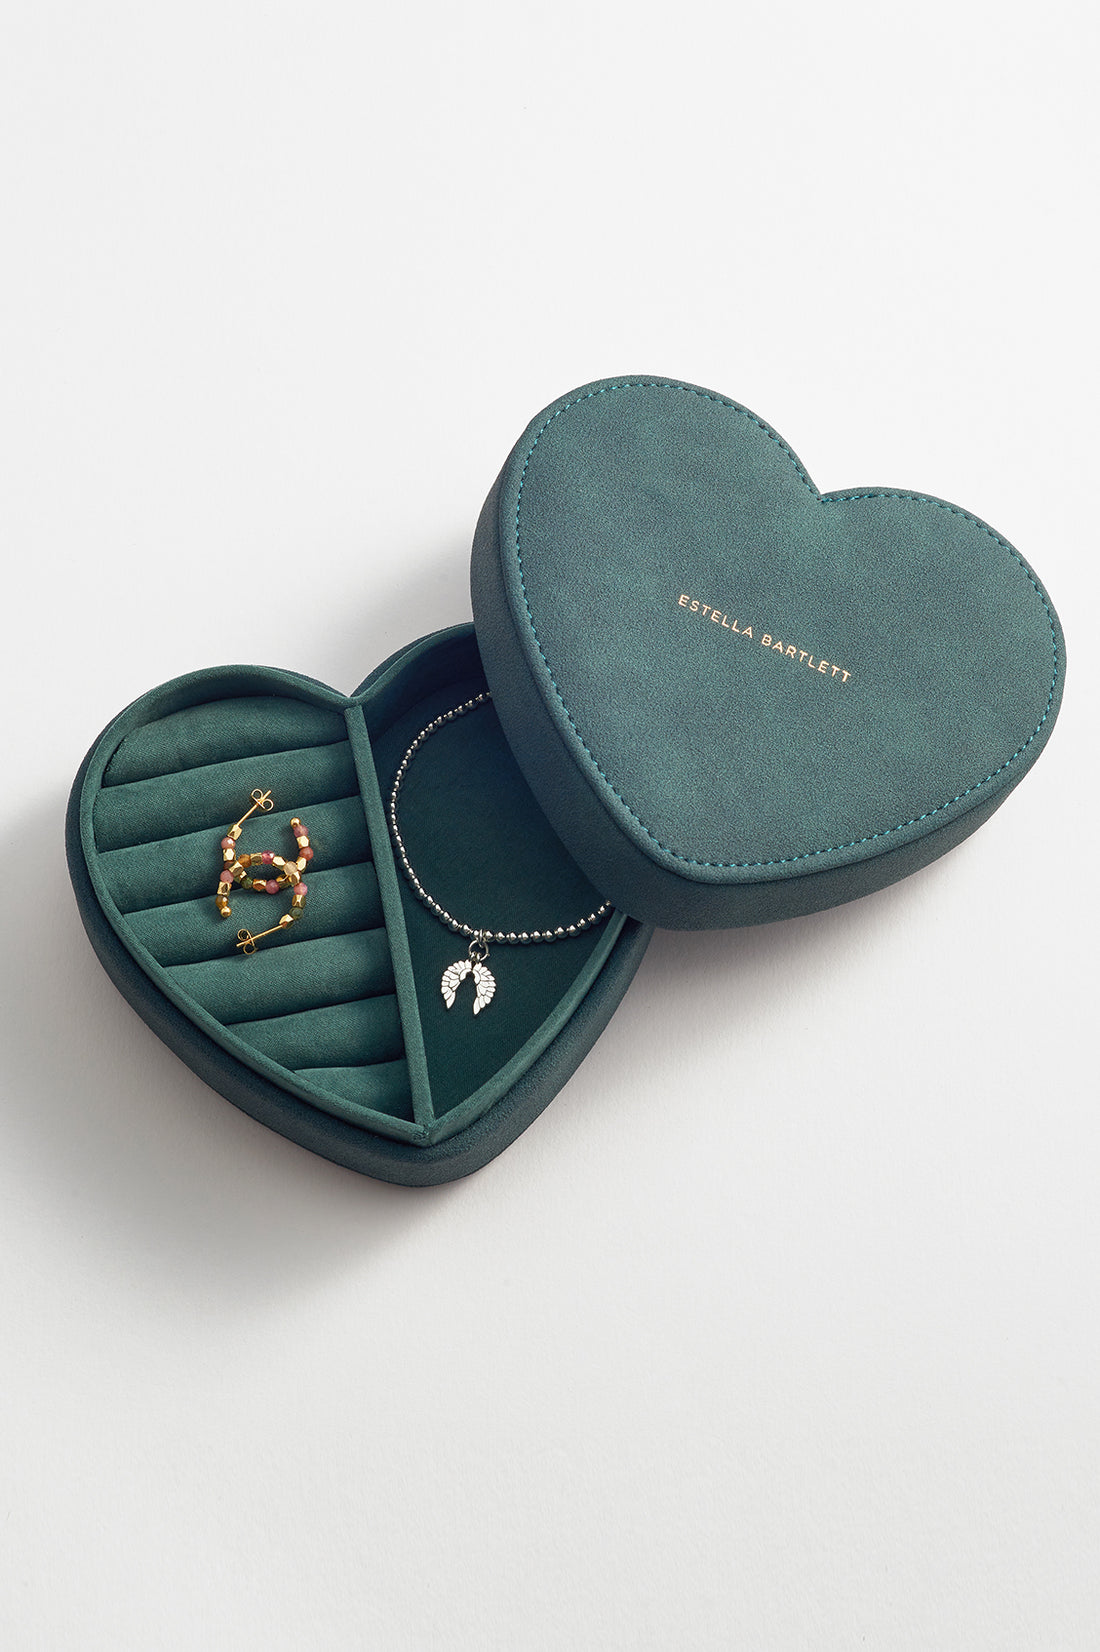 Heart Jewellery Box - Teal Velvet